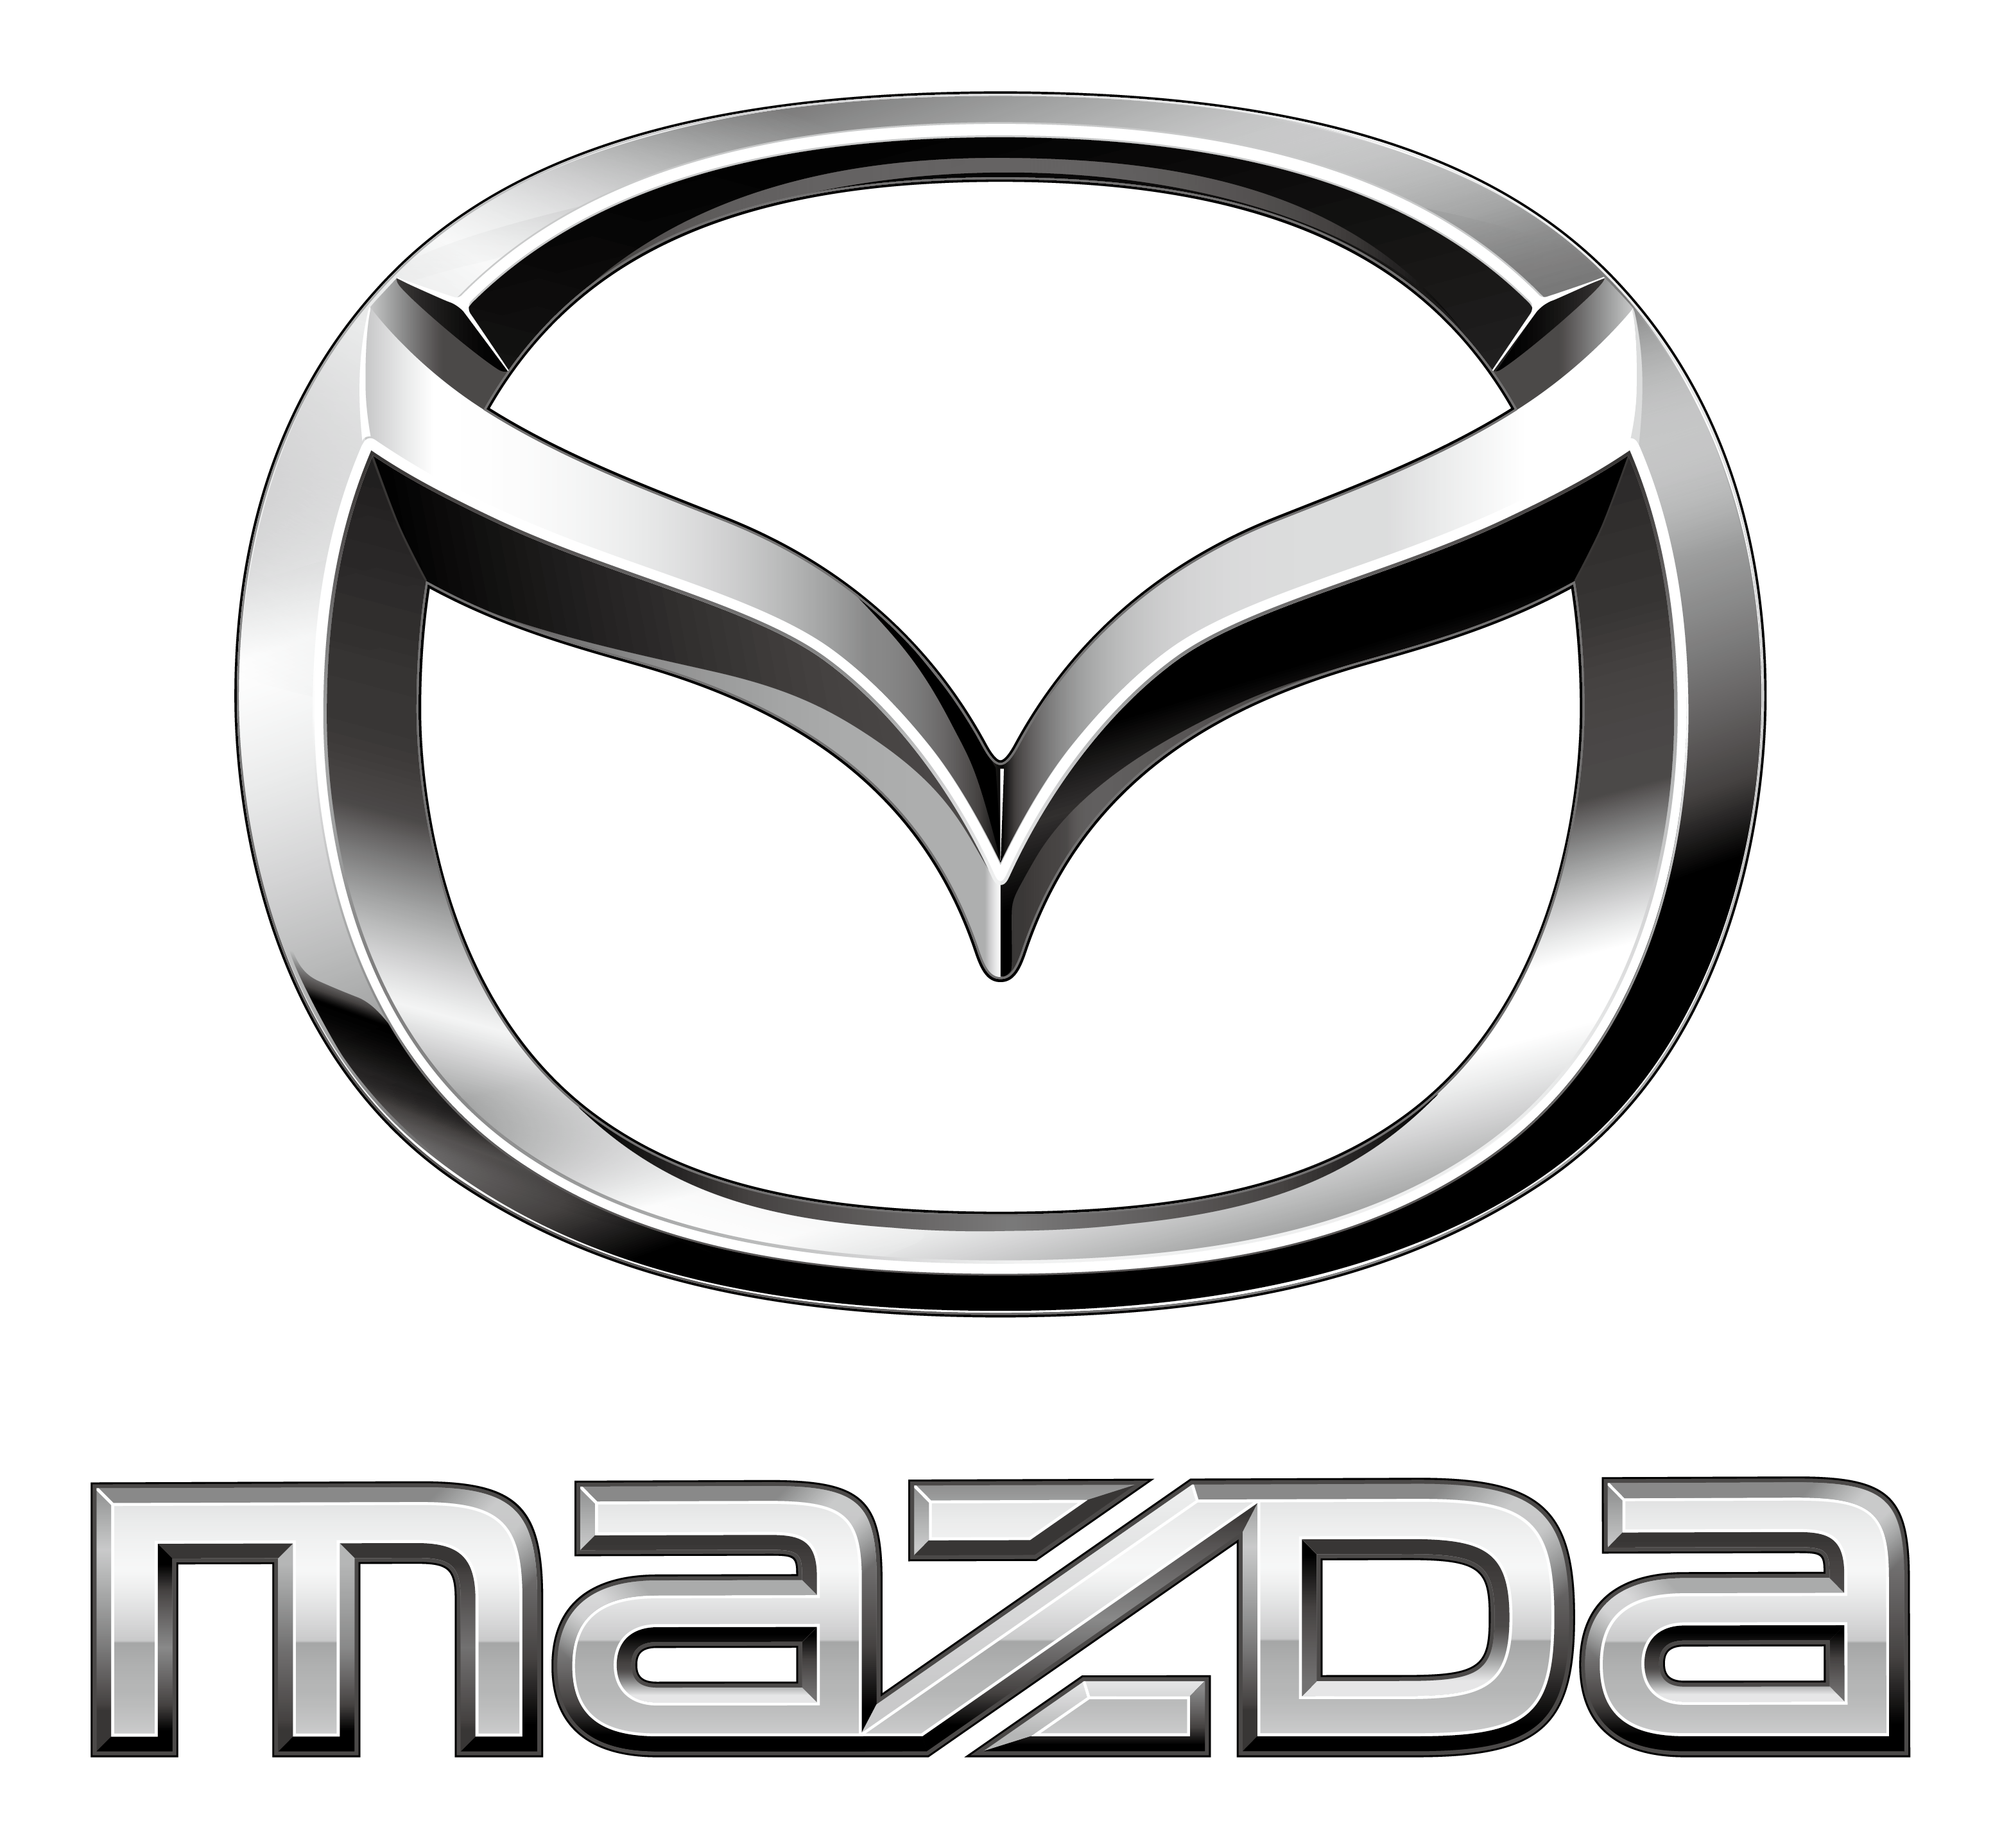 Carrosserie - Marche Pieds Mazda